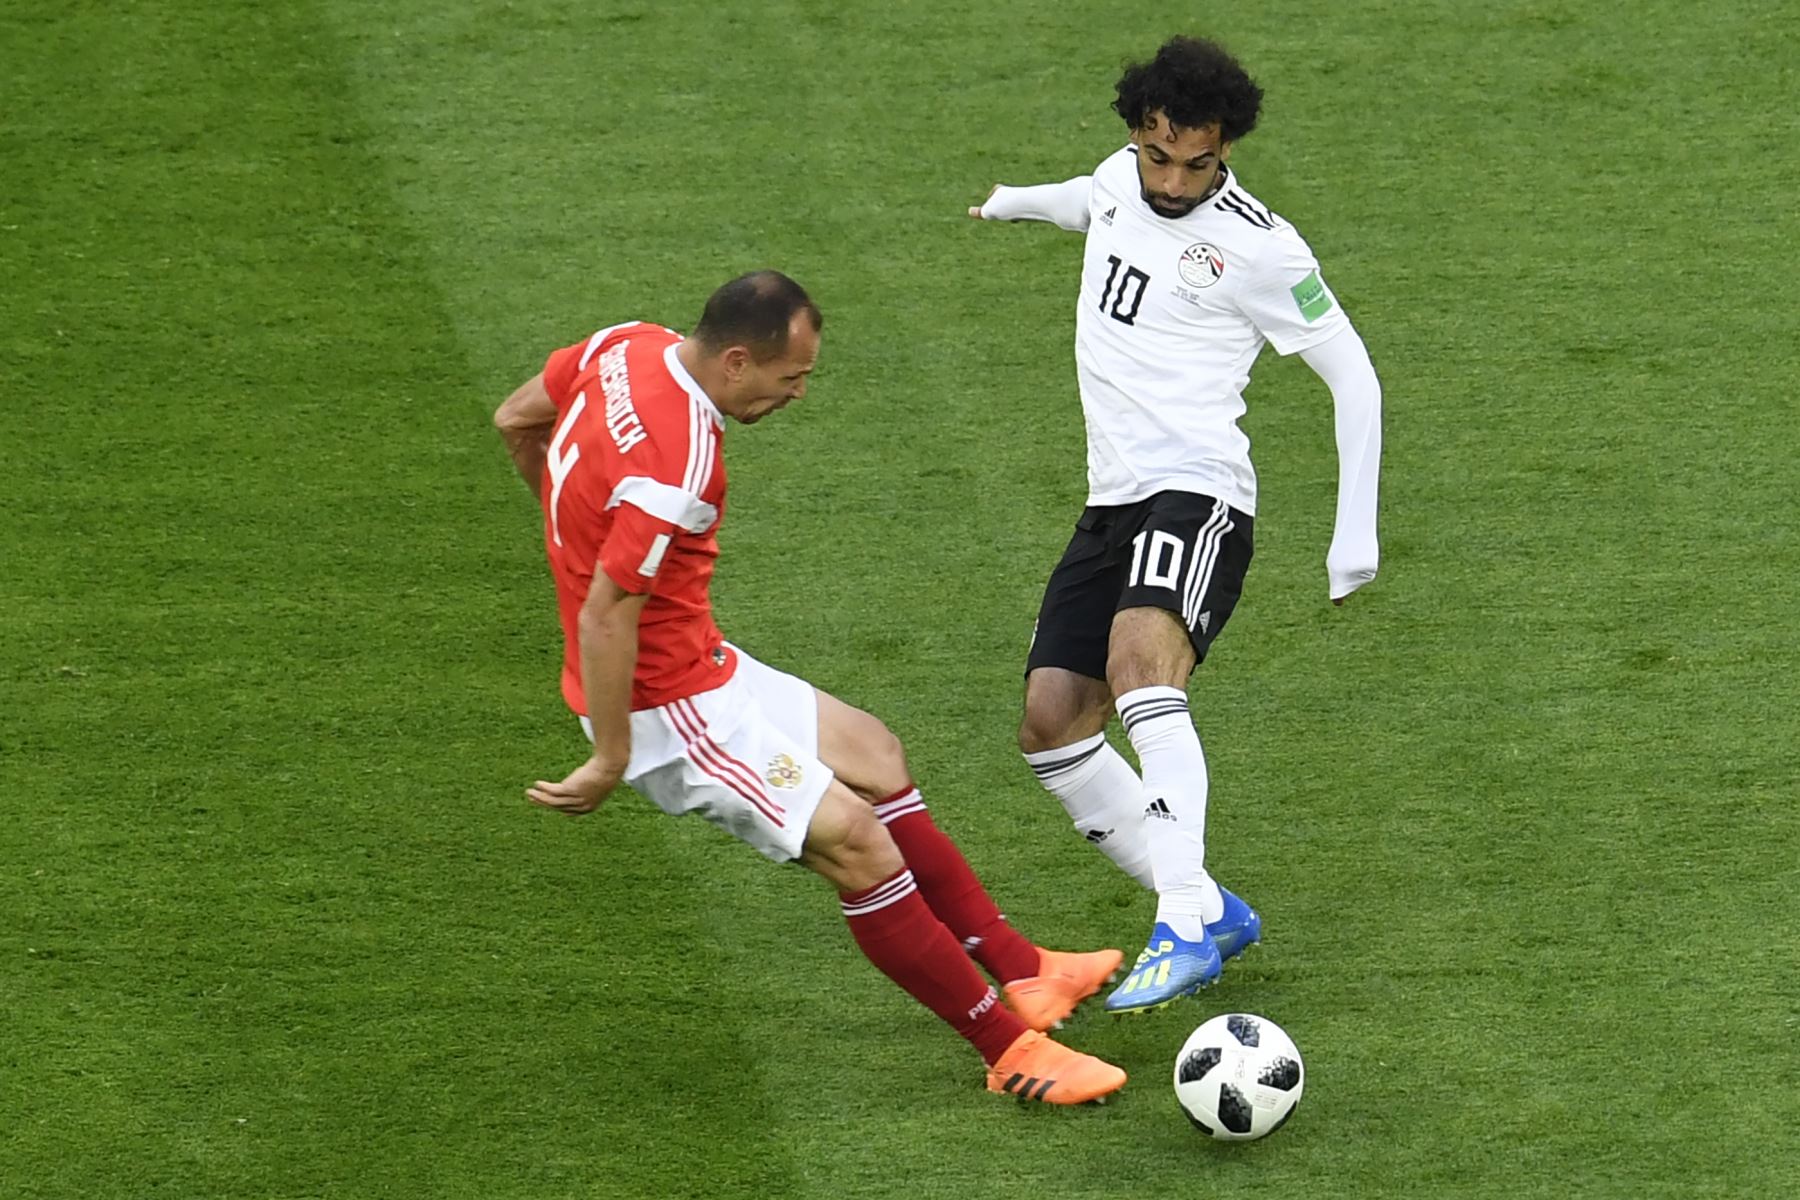 El delantero egipcio Mohamed Salah (R) regatea al defensor ruso Sergey Ignashevich durante el partido de fútbol del Grupo A de la Copa Mundial Rusia 2018 entre Rusia y Egipto en el estadio San Petersburgo de San Petersburgo el 19 de junio de 2018. / AFP